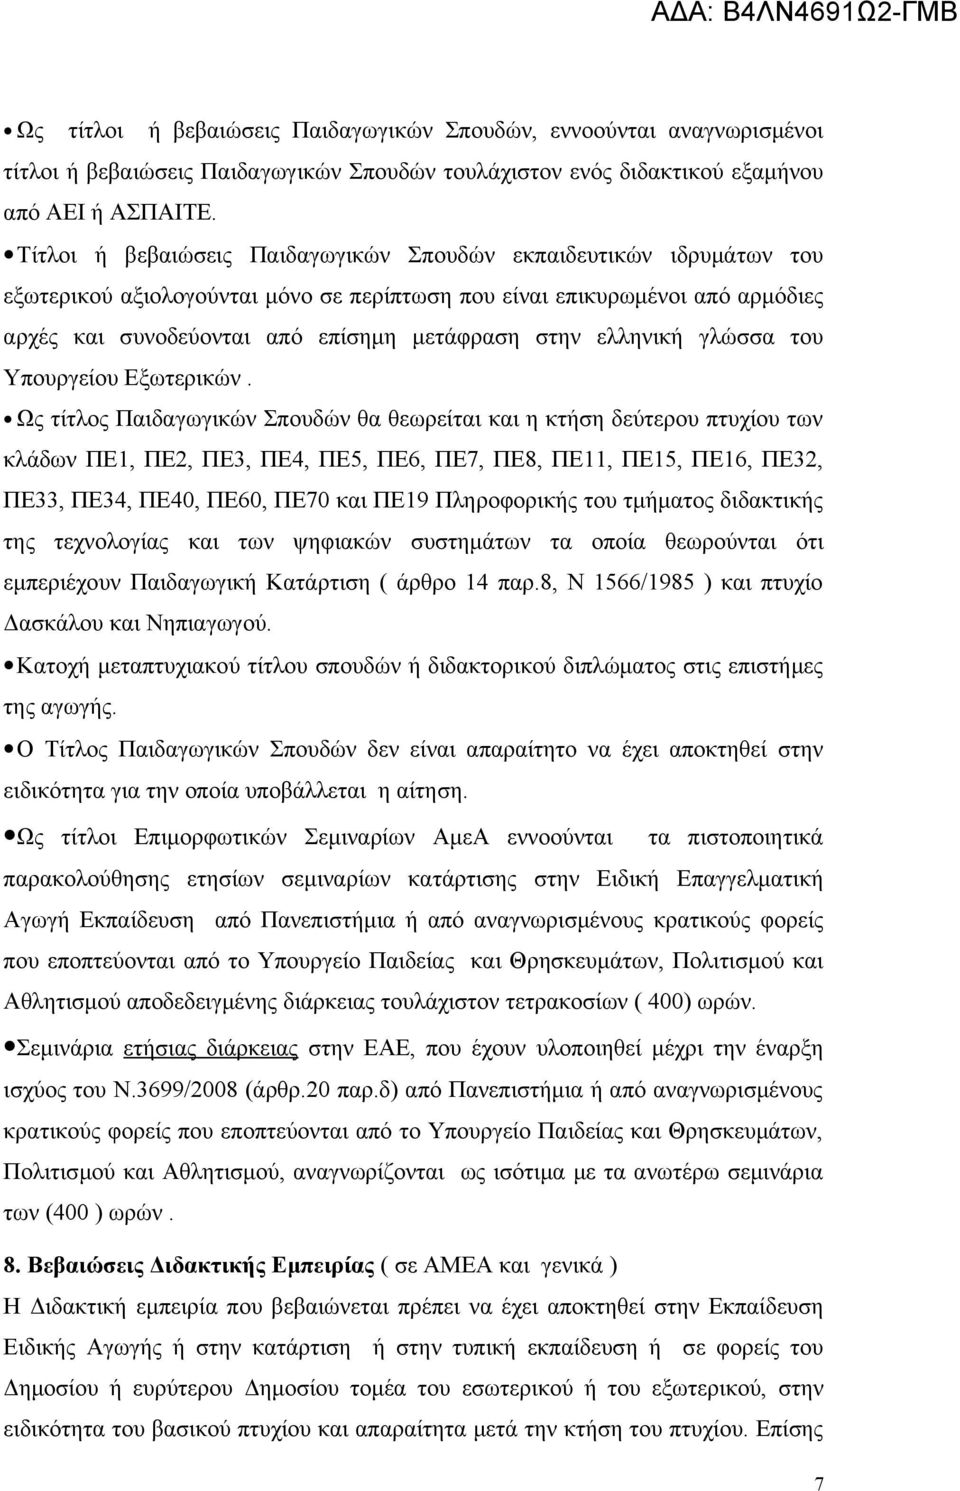 ελληνική γλώσσα του Υπουργείου Εξωτερικών.